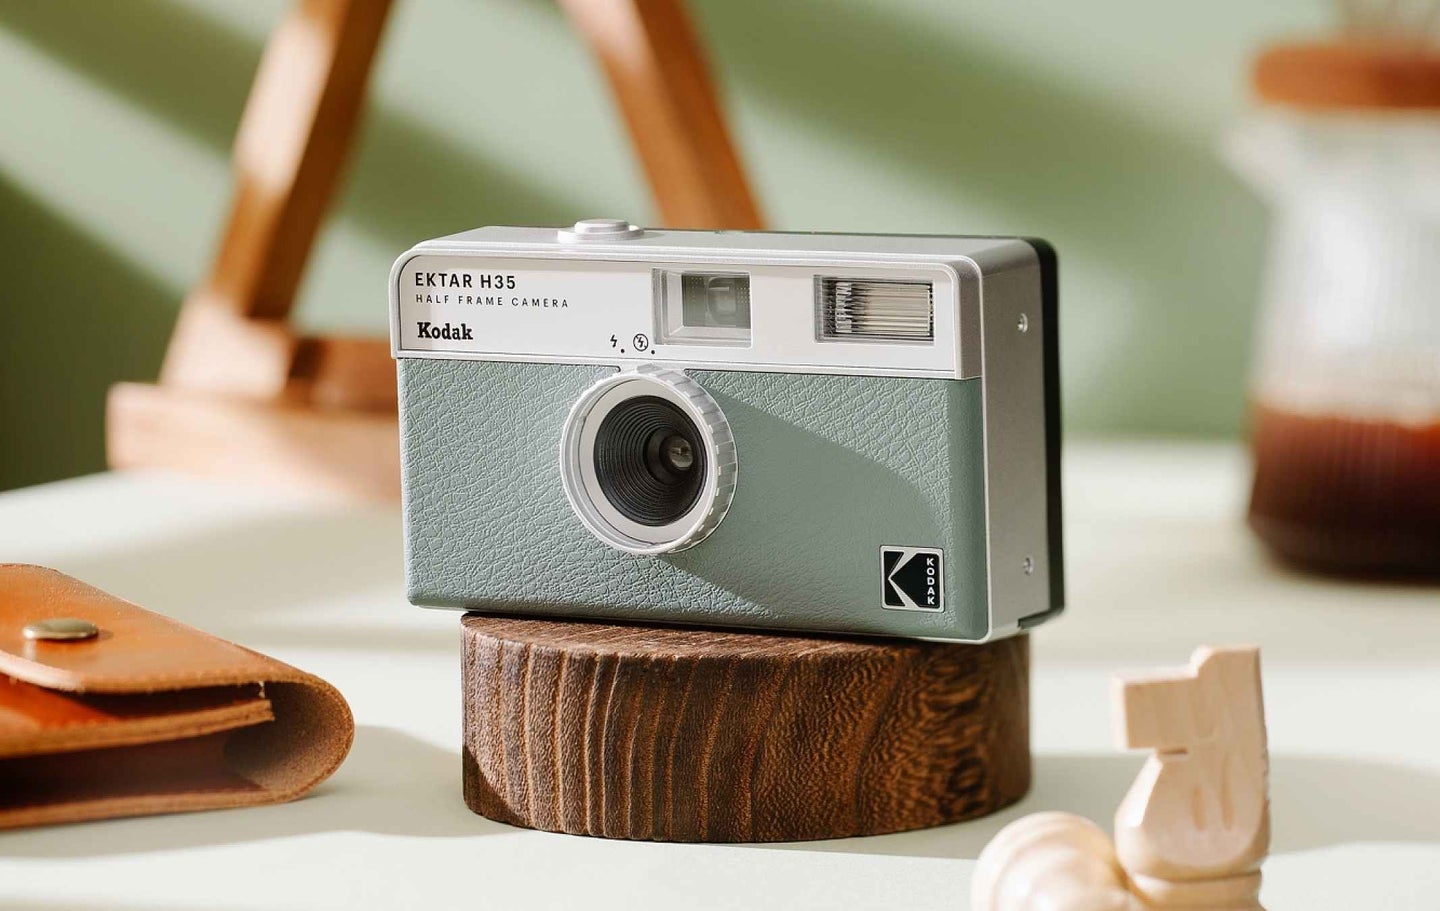 Kodak Ektar H35 camera